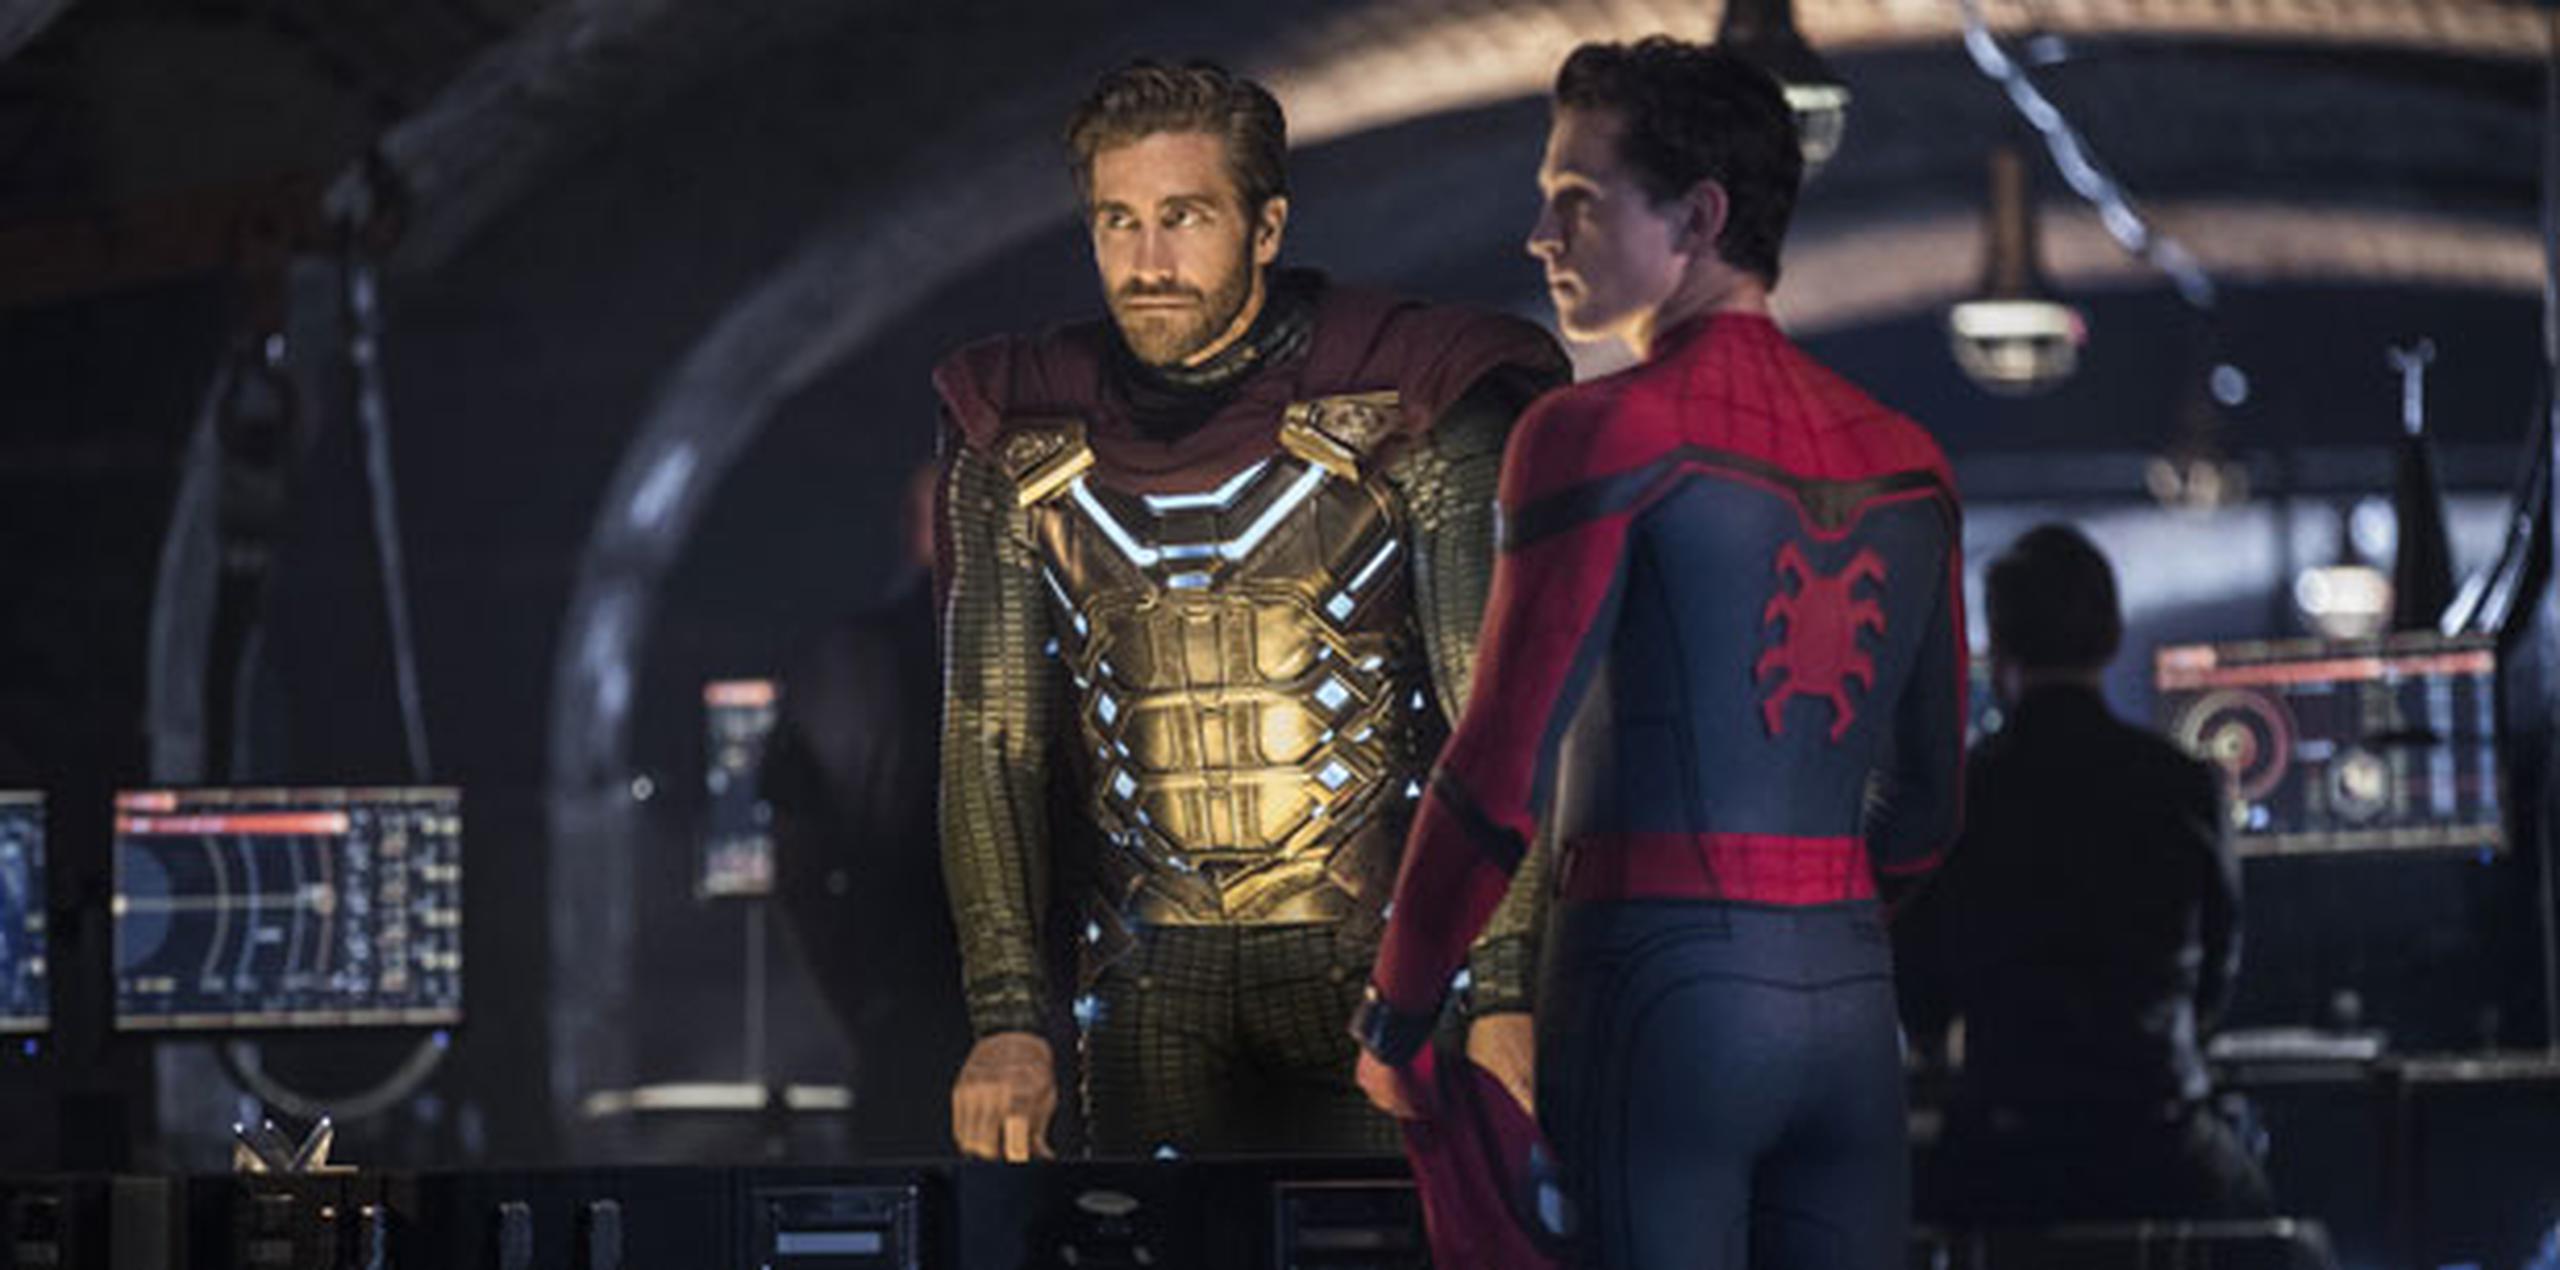 La secuela de “Spider-Man” sumó 45.3 millones de dólares a su recaudación doméstica. (Archivo)